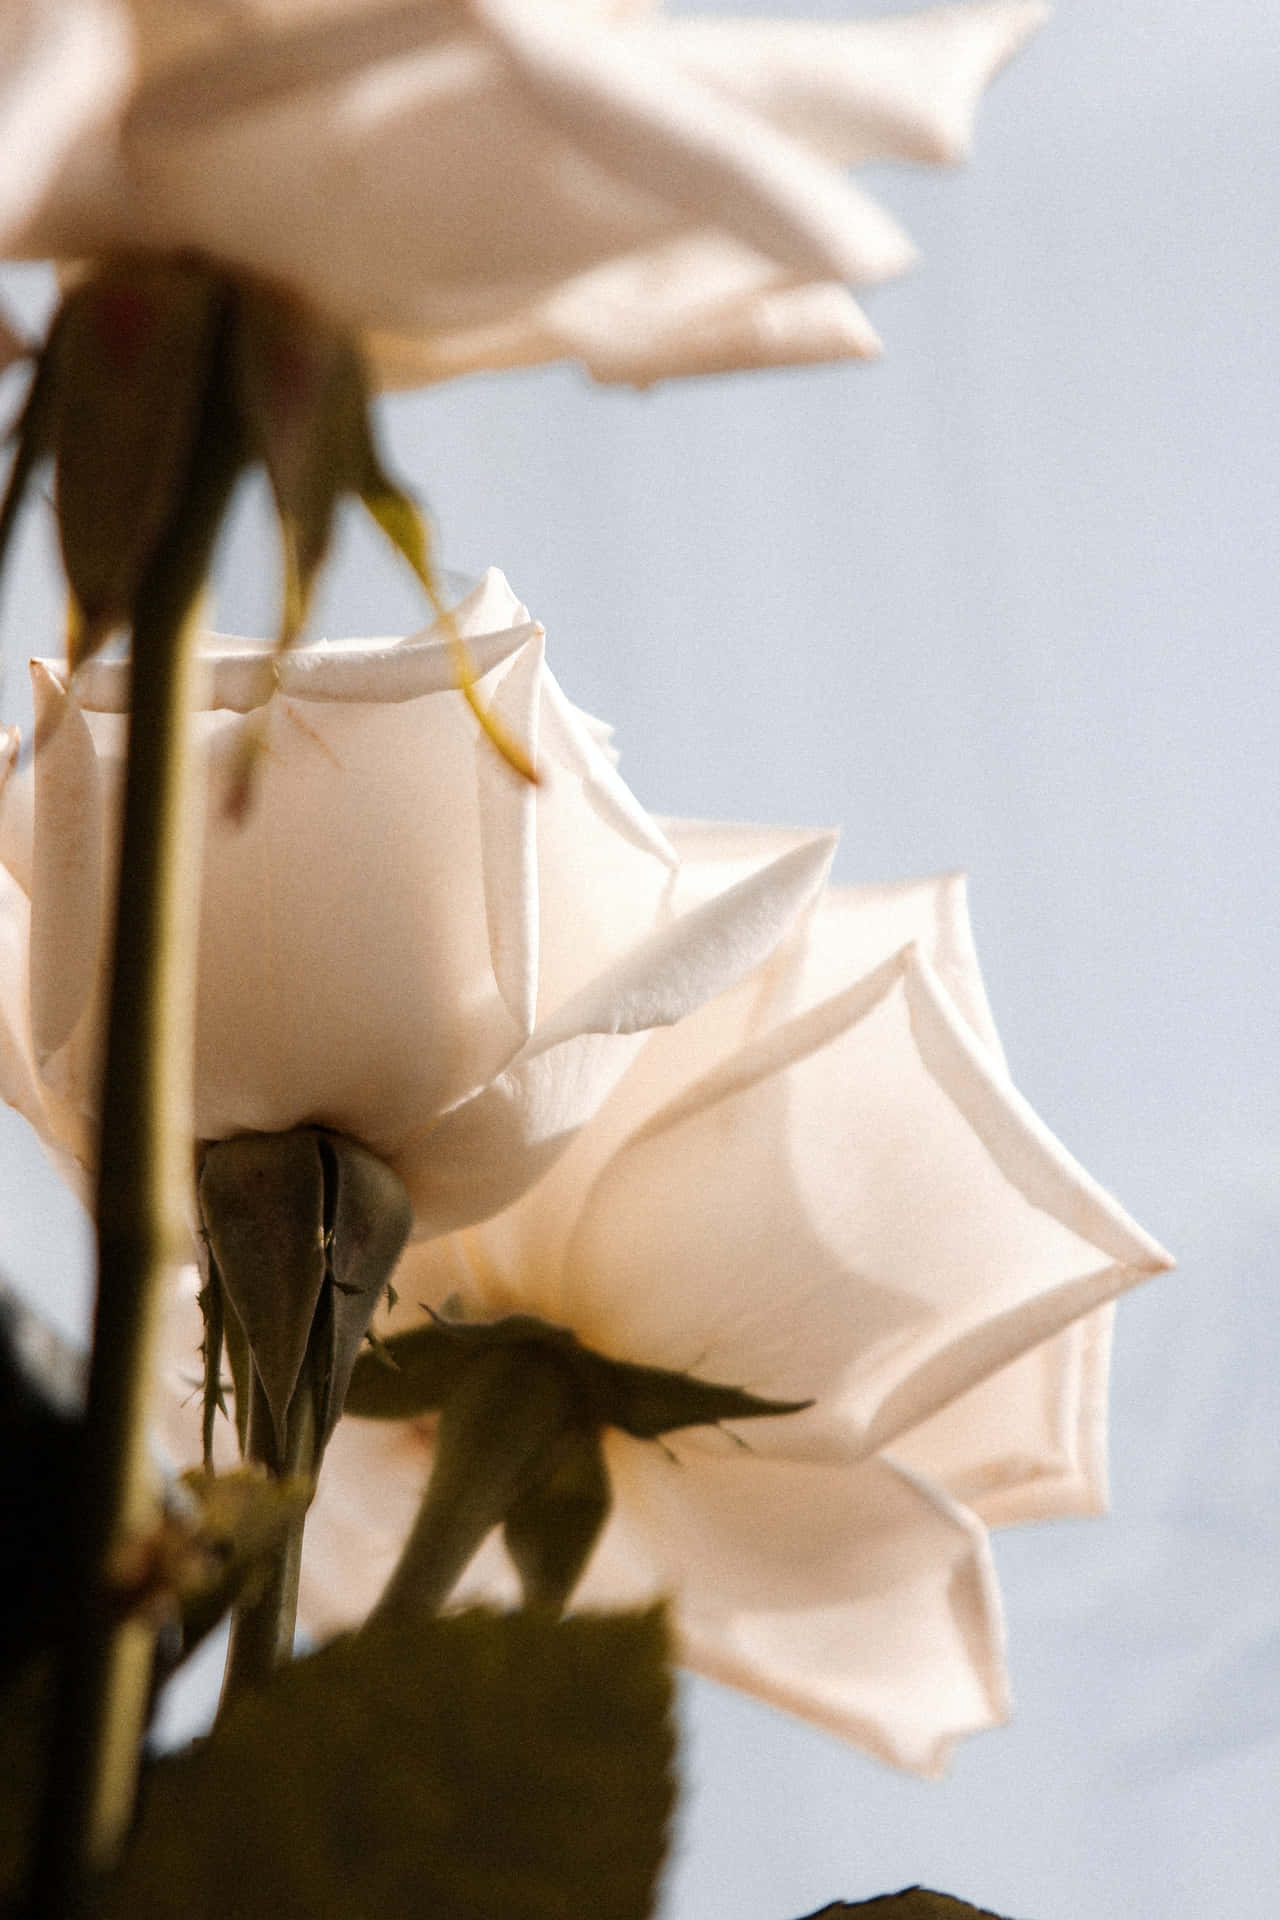 Hintergrundbildermit Weißen Rosenblüten Im Hochformat